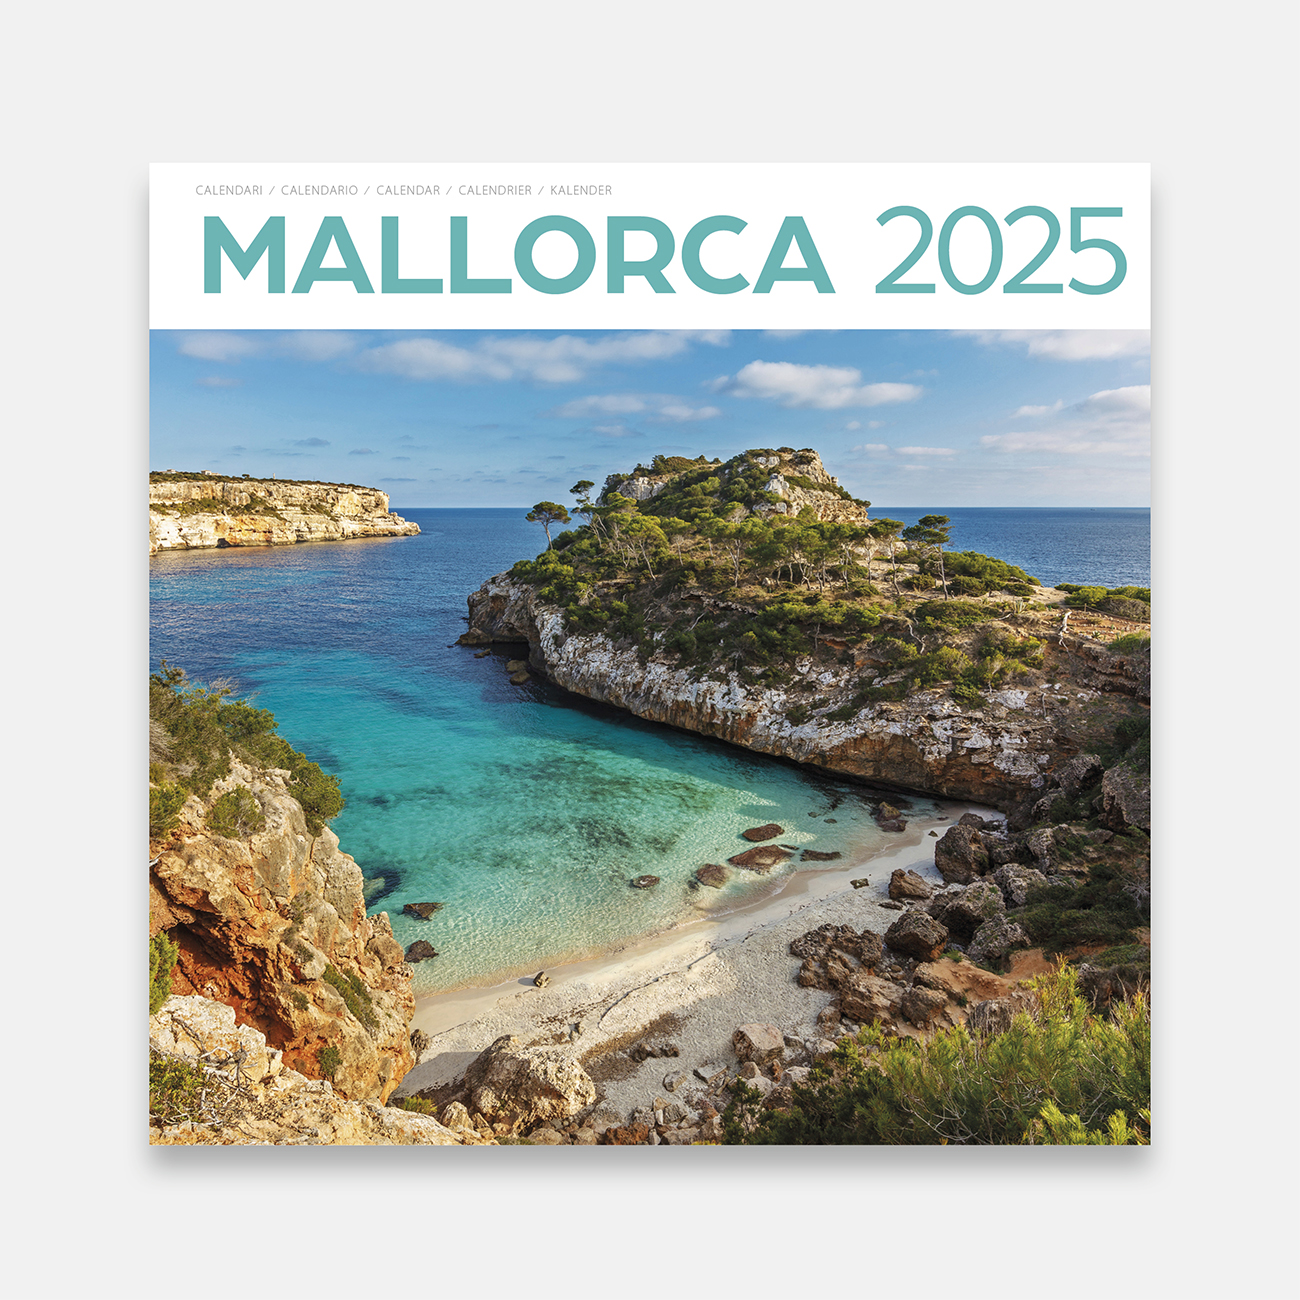 Calendrier 2025 Majorque 25ma1 calendario pared 2025 mallorca